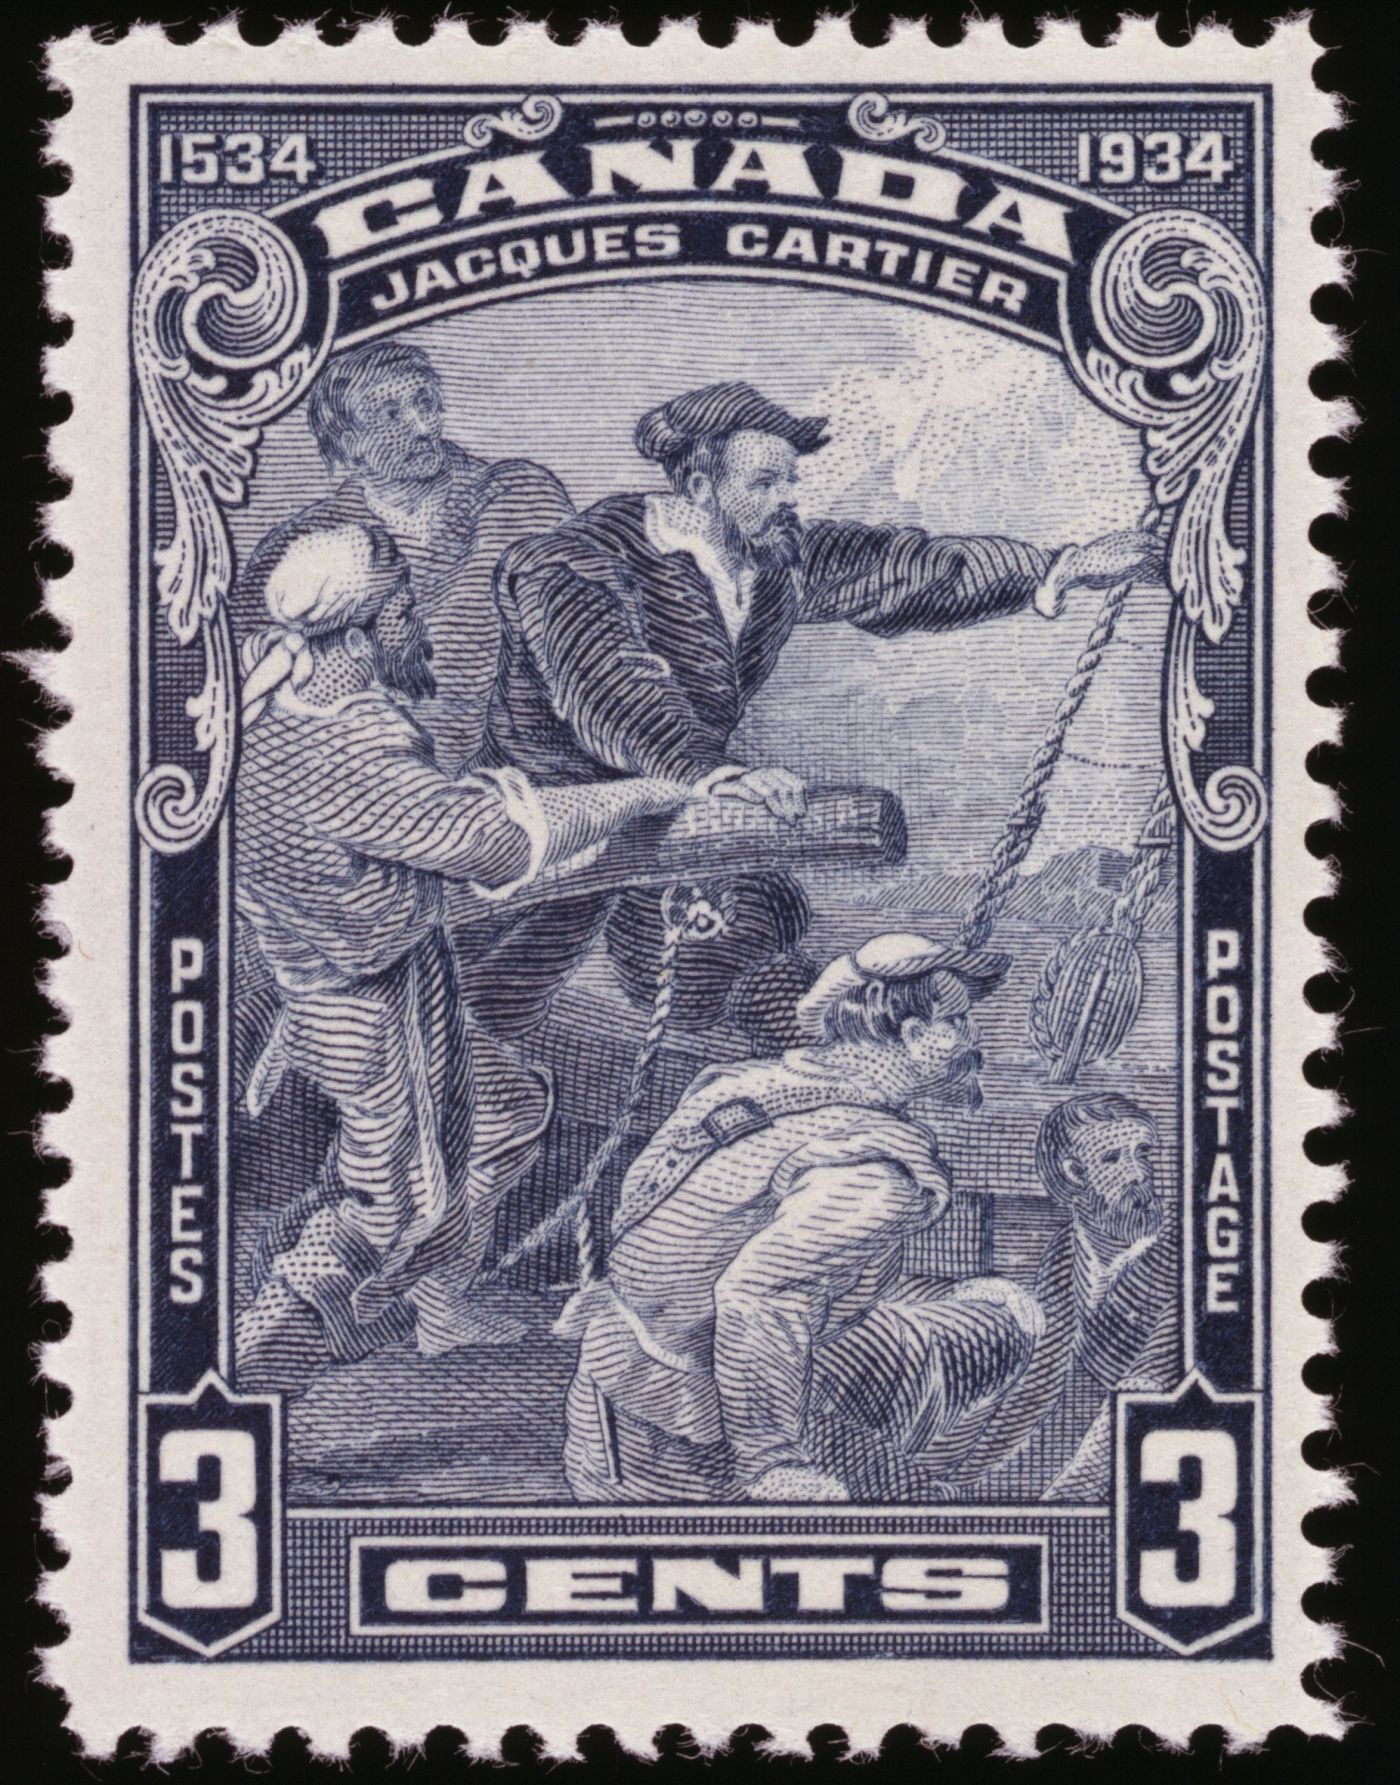 Photographie en couleur d’un timbre-poste canadien, d’une valeur de 3 cents. Cinq marins s’activent sur le pont d’un navire, regardant à l’horizon. Celui dont la coiffure traduit un rang plus élevé, a la main sur le gouvernail. Le texte est dactylographié en français et en anglais.